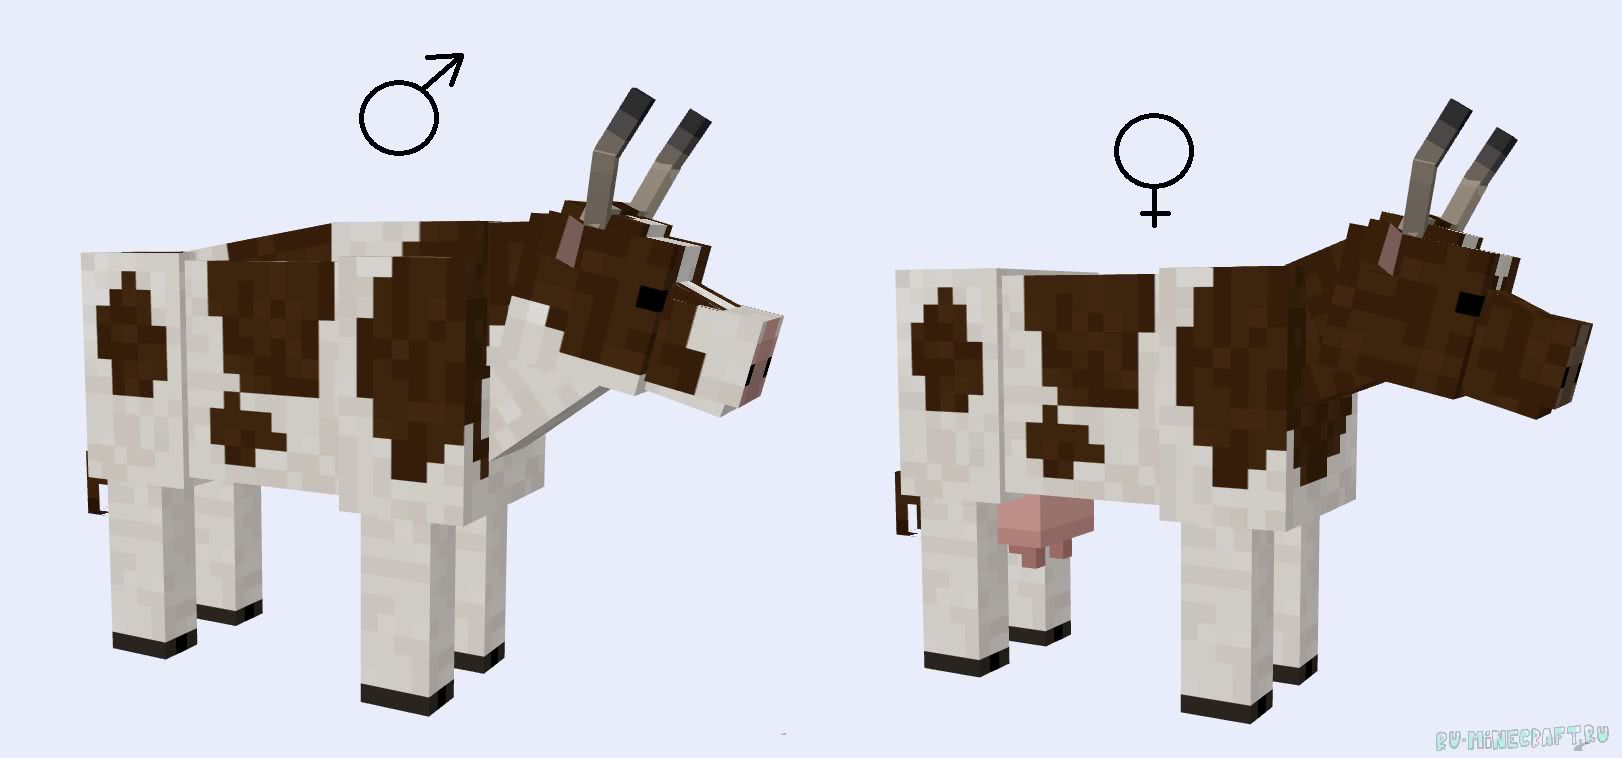 Что в майнкрафте есть корова. Корова из МАЙНКРАФТА сбоку. Лошадь из МАЙНКРАФТА сбоку. Модель коровы из МАЙНКРАФТА.